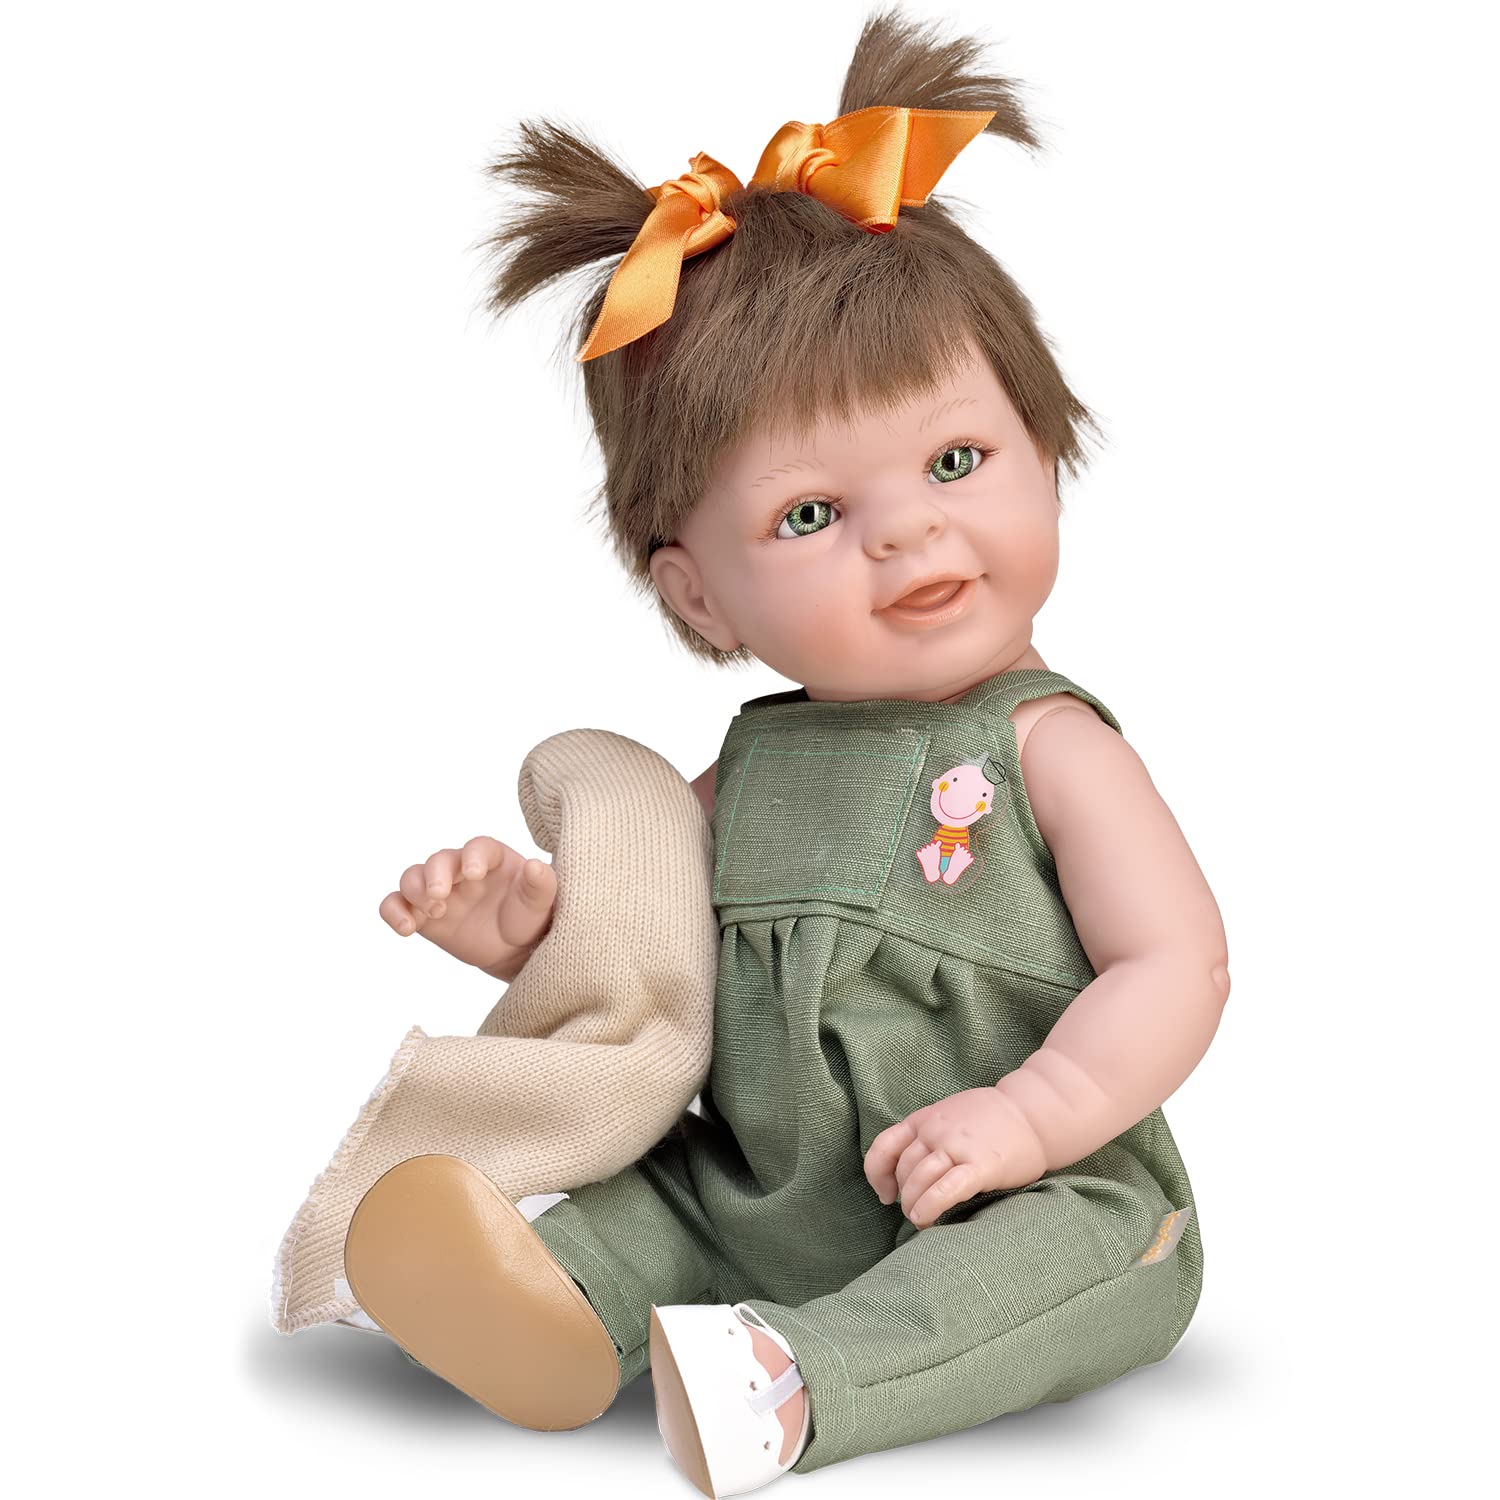 Krause & Sohn Hochwertige Puppe Spielpuppe 18-47 cm blond brünett rothaarig mit Vinylkörper Anziehpuppe für Kinder Spielzeug (Lilly - 47 cm)